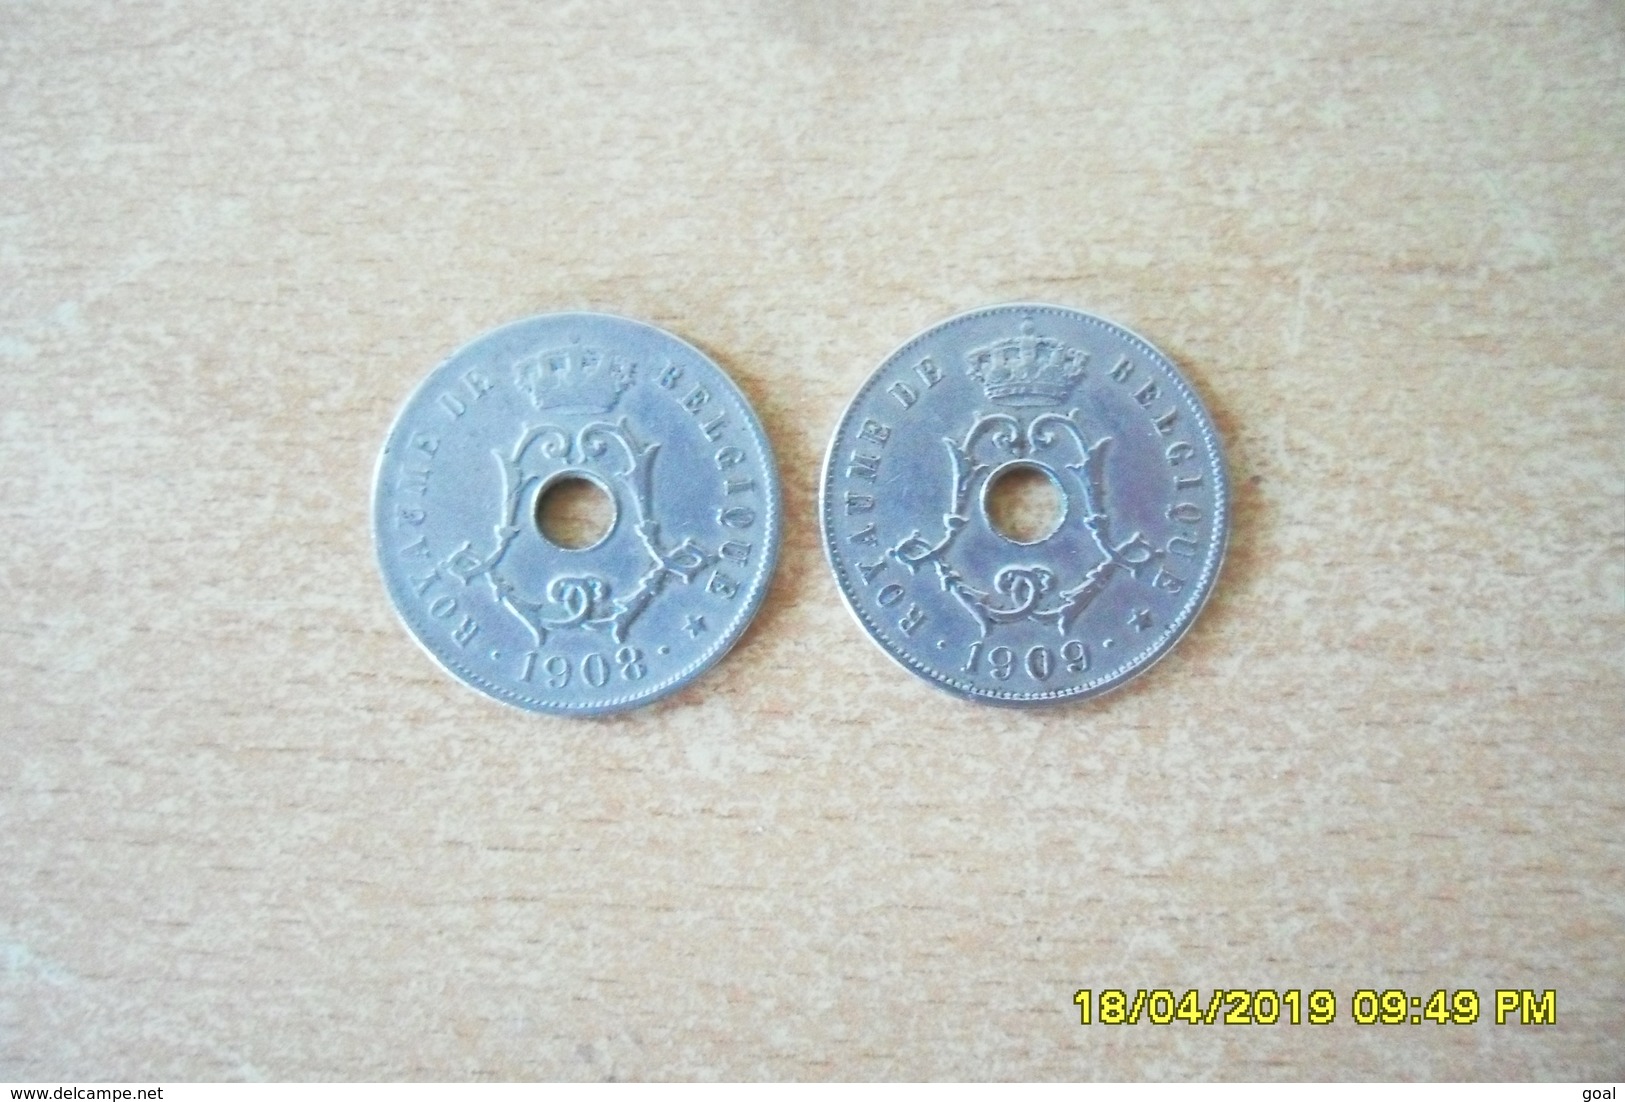 2 Monnaies De 25 Centimes De Belgique 1908 Et 1909 En TTB+(Monnaies Plus Belle Que Photos) - 25 Cent